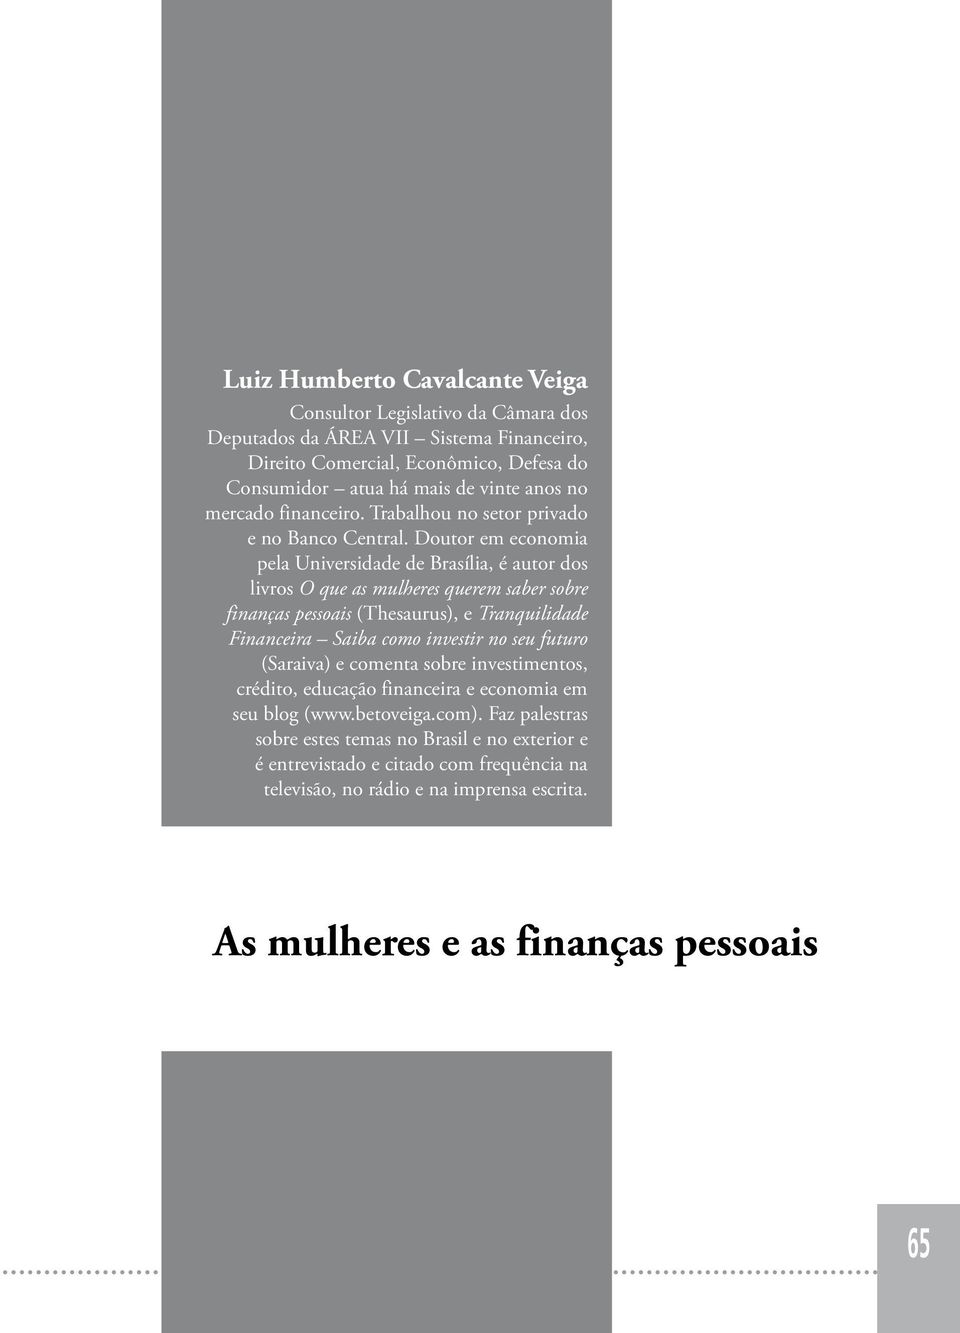 Doutor em economia pela Universidade de Brasília, é autor dos livros O que as mulheres querem saber sobre finanças pessoais (Thesaurus), e Tranquilidade Financeira Saiba como investir no